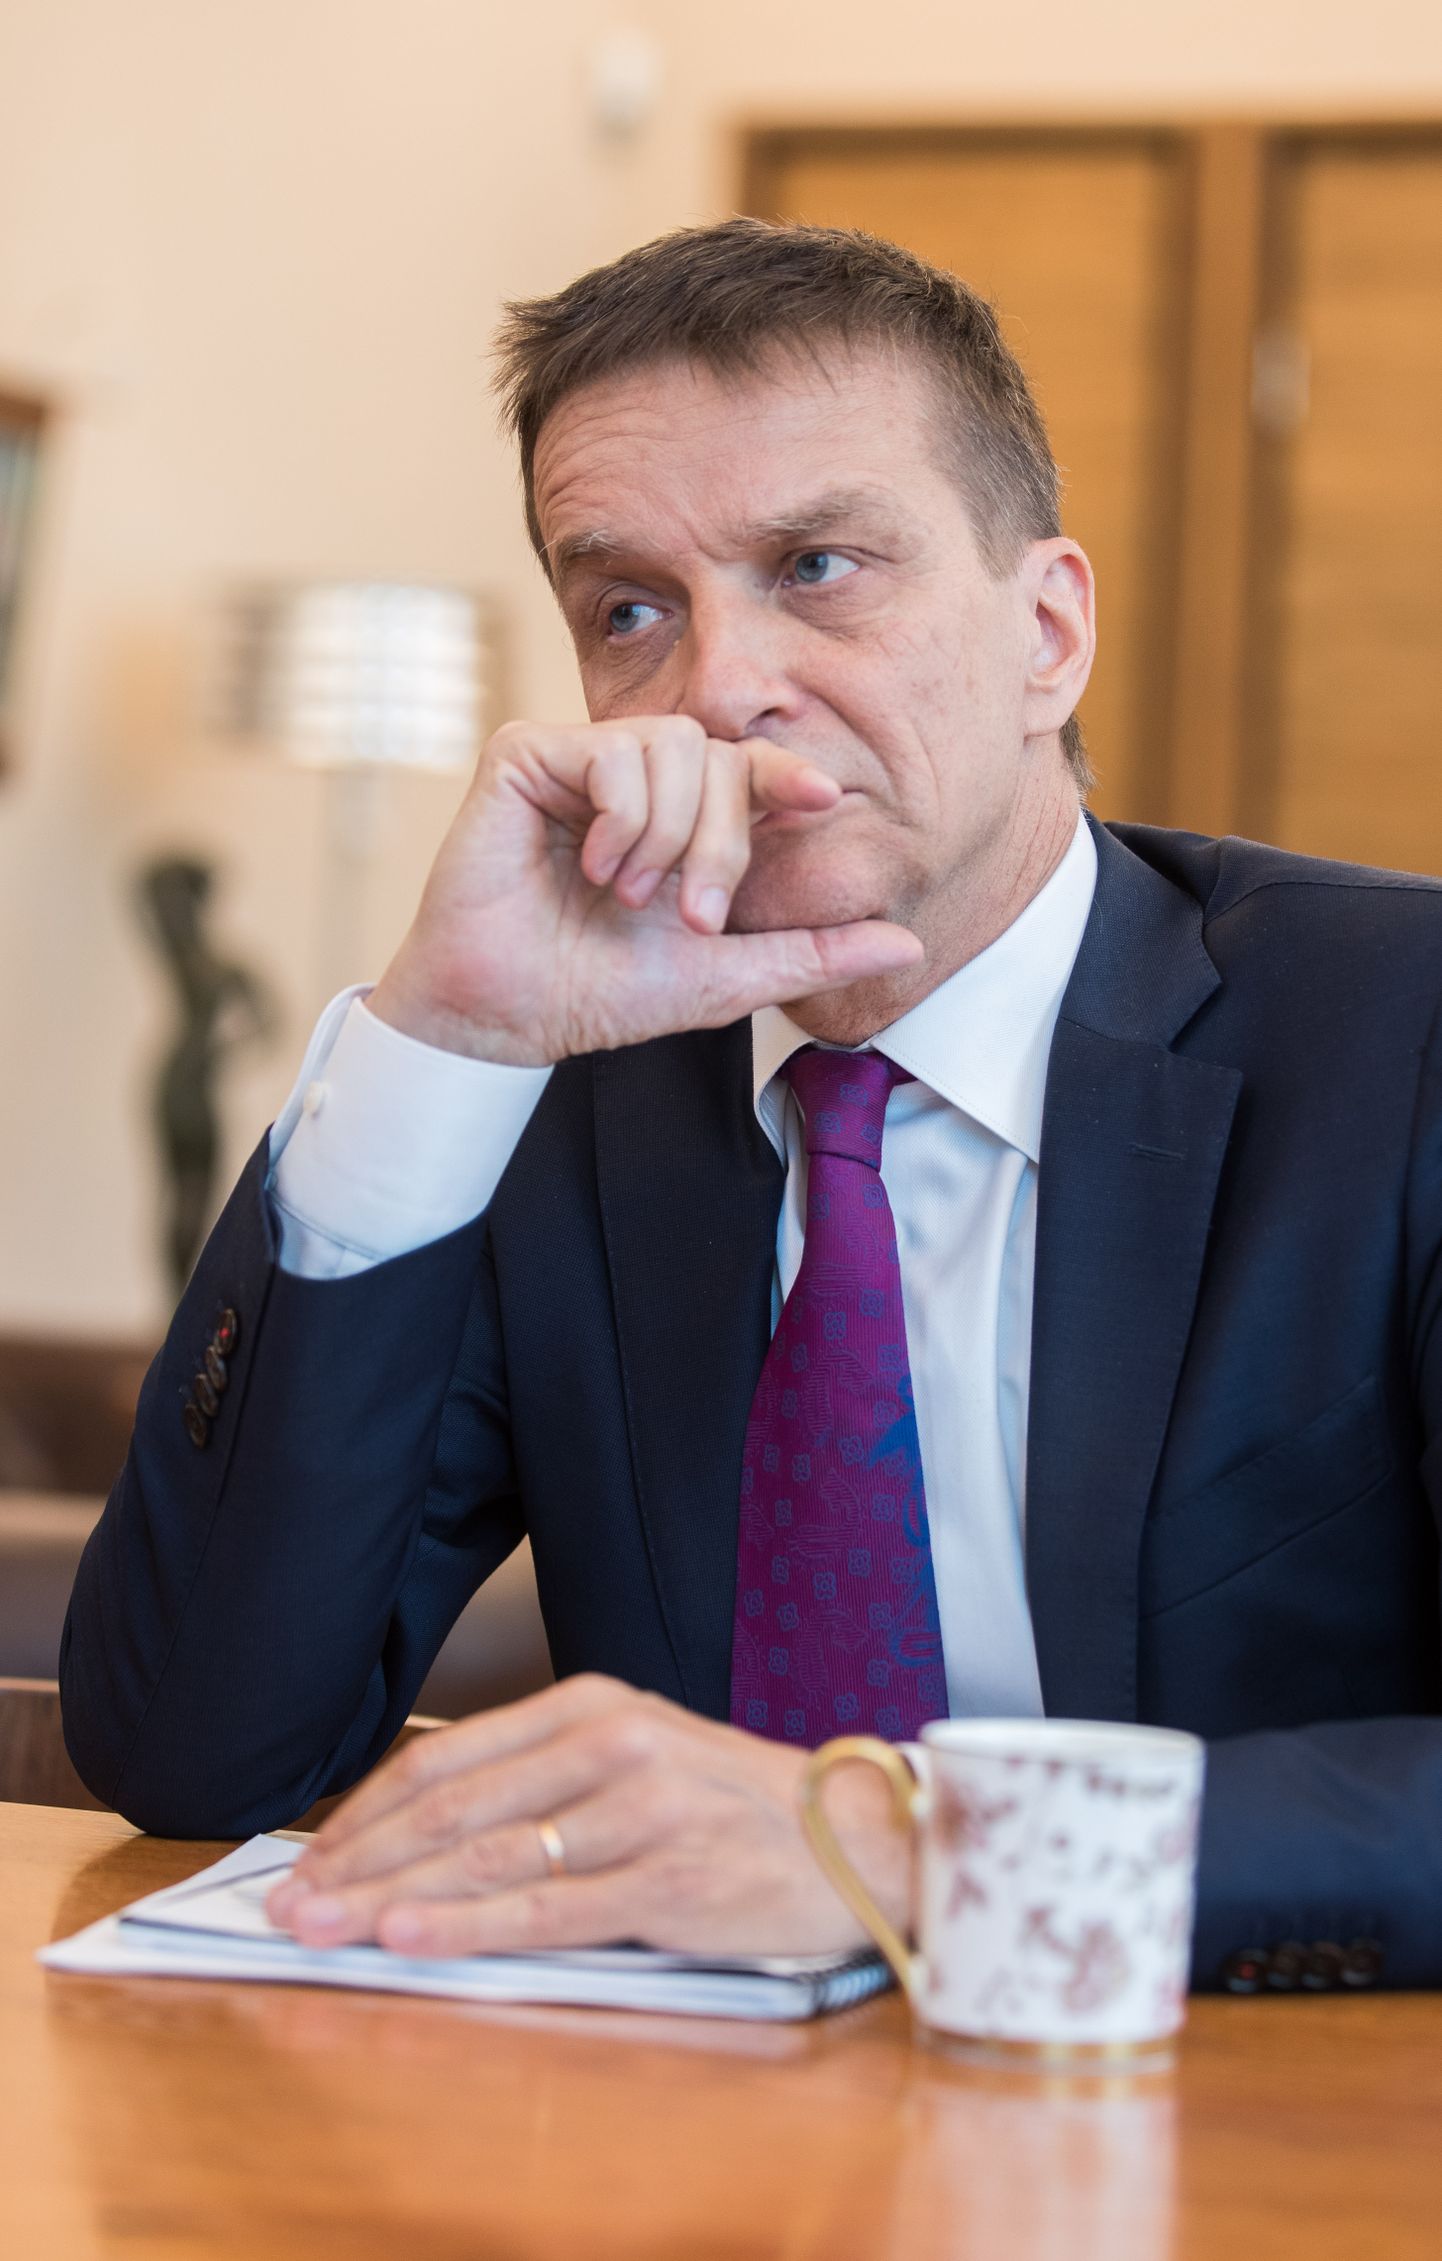 Eesti Panga presidendi Ardo Hanssoni sõnul võib teise sama vabatahtlikuks muutmisega kaasneda majanduse ülekuumenemine ja kinnisvarahindade liiga kiire tõus.